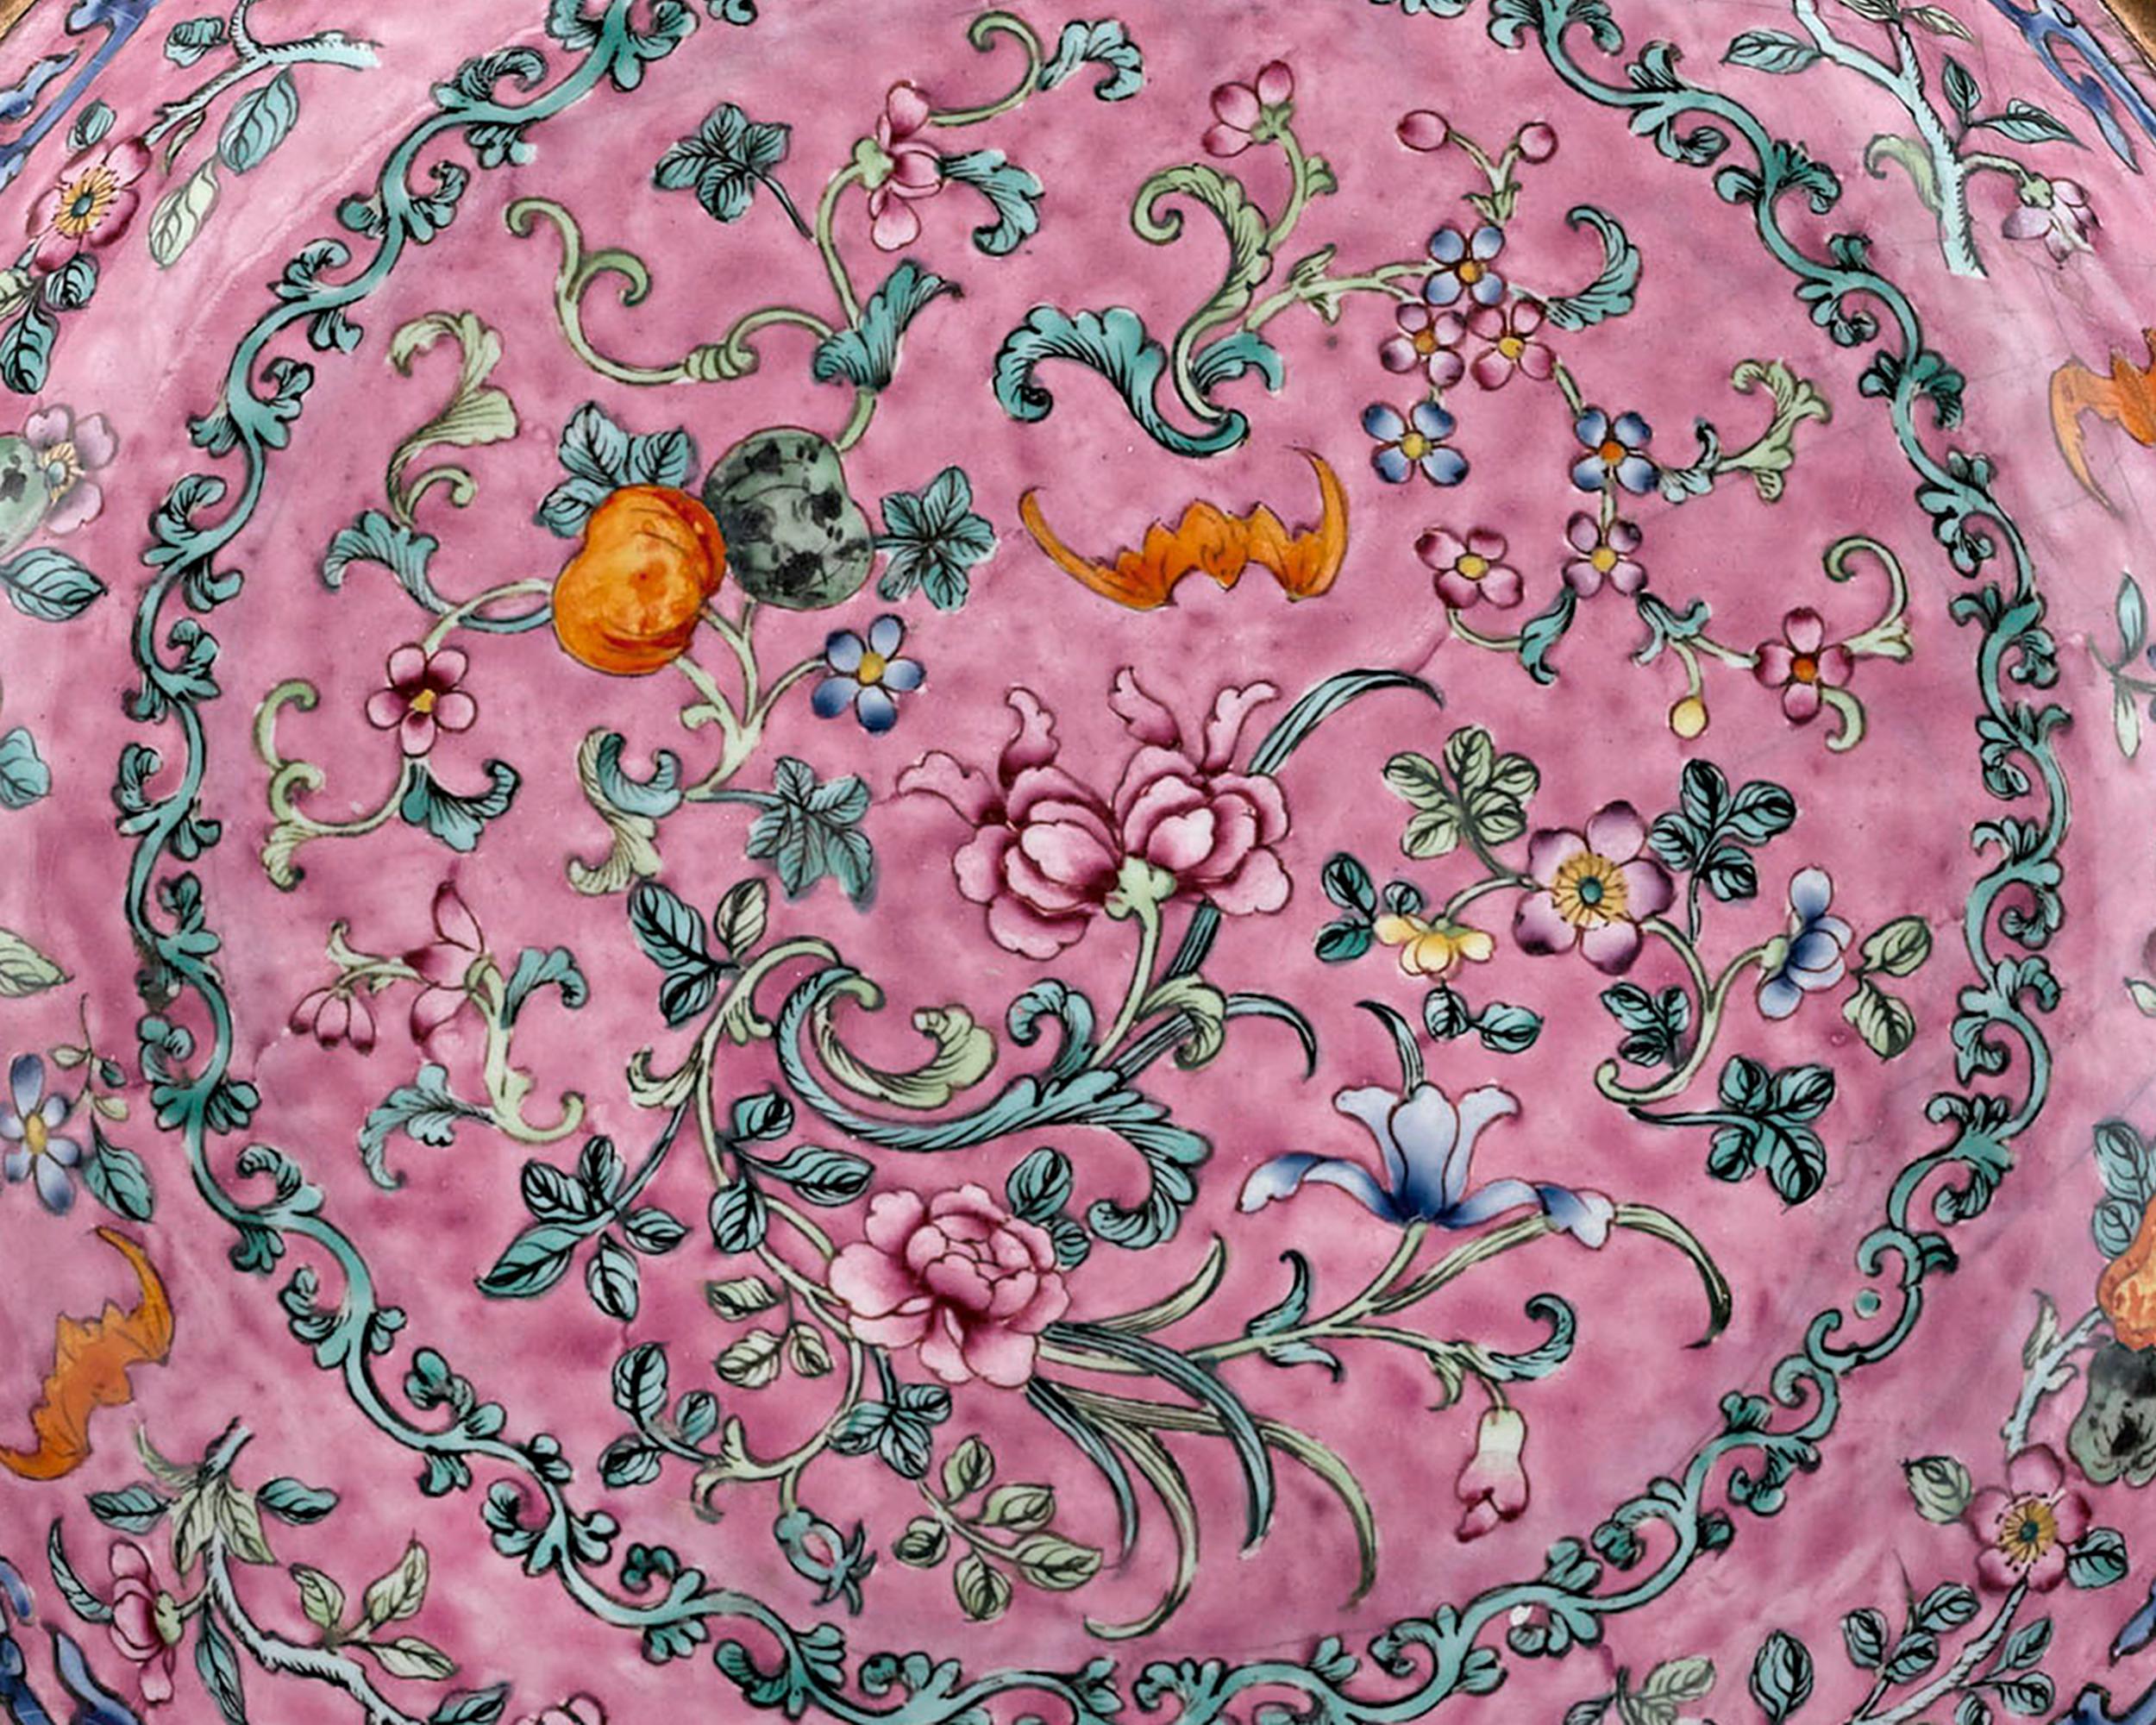 Cette ravissante assiette chinoise, connue sous le nom d'émail de Canton, évoque l'intrigue et l'exclusivité de la cour impériale du XVIIIe siècle. Dotée d'une magnifique teinte de fond famille rose, cette assiette est ornée d'un motif floral